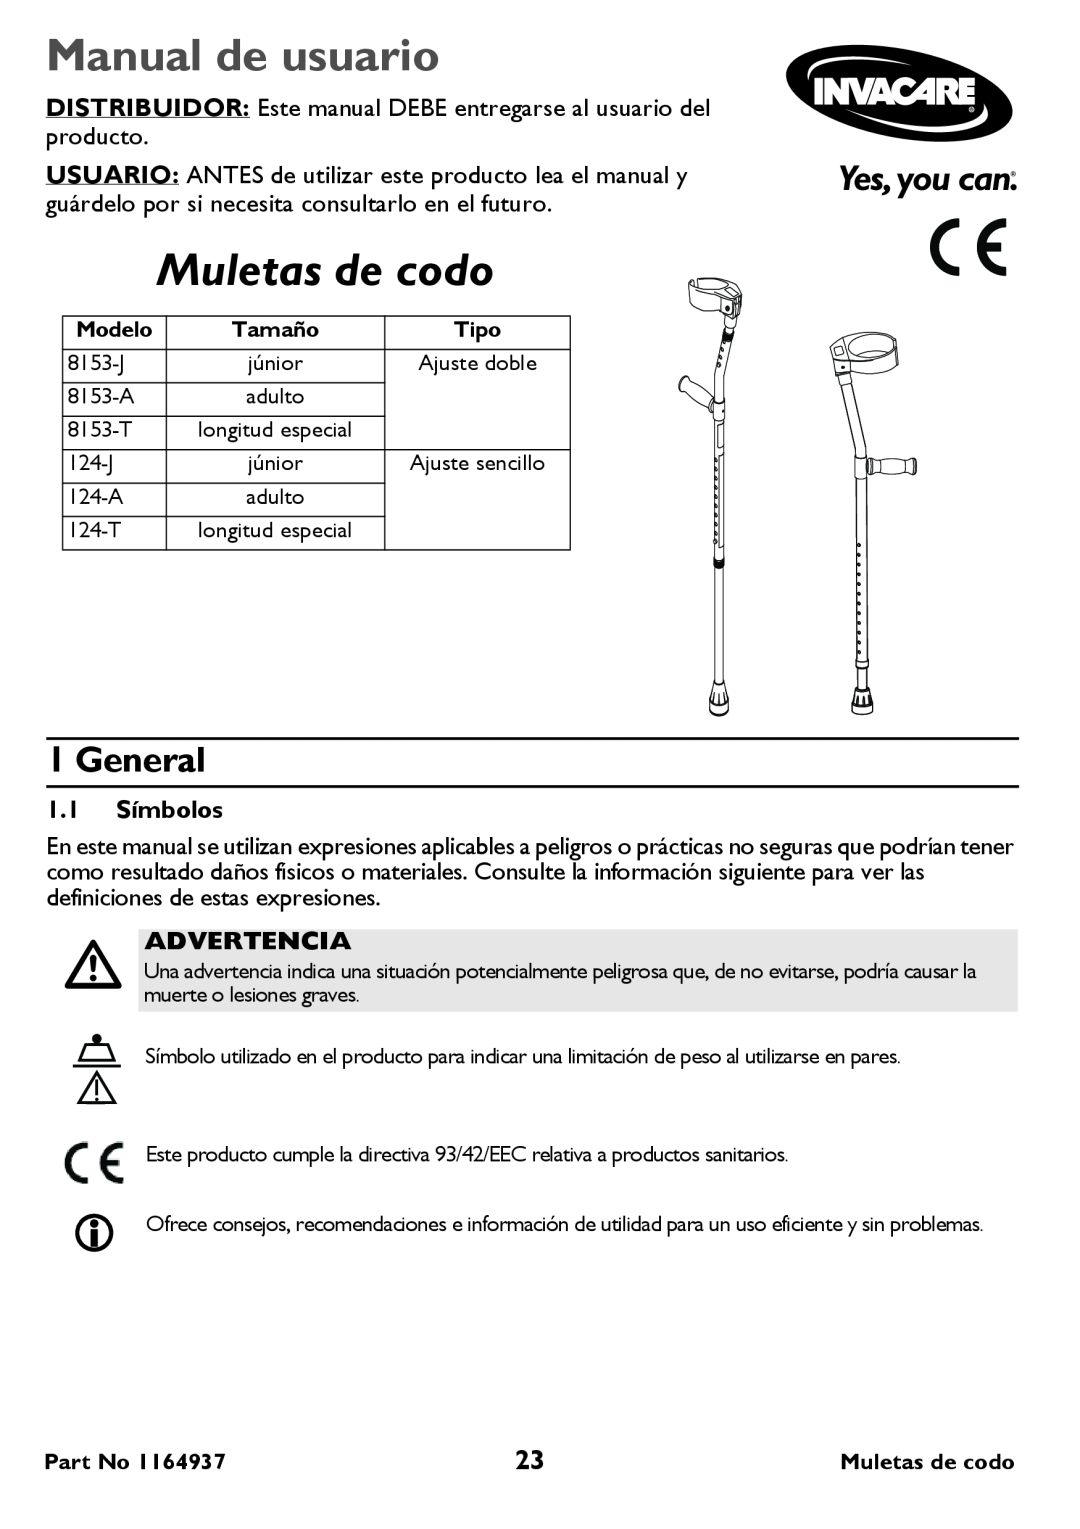 Invacare 124-J Junior Single Adjust, 8153-A Adult Manual de usuario, Muletas de codo, 1.1 Símbolos, Advertencia, General 